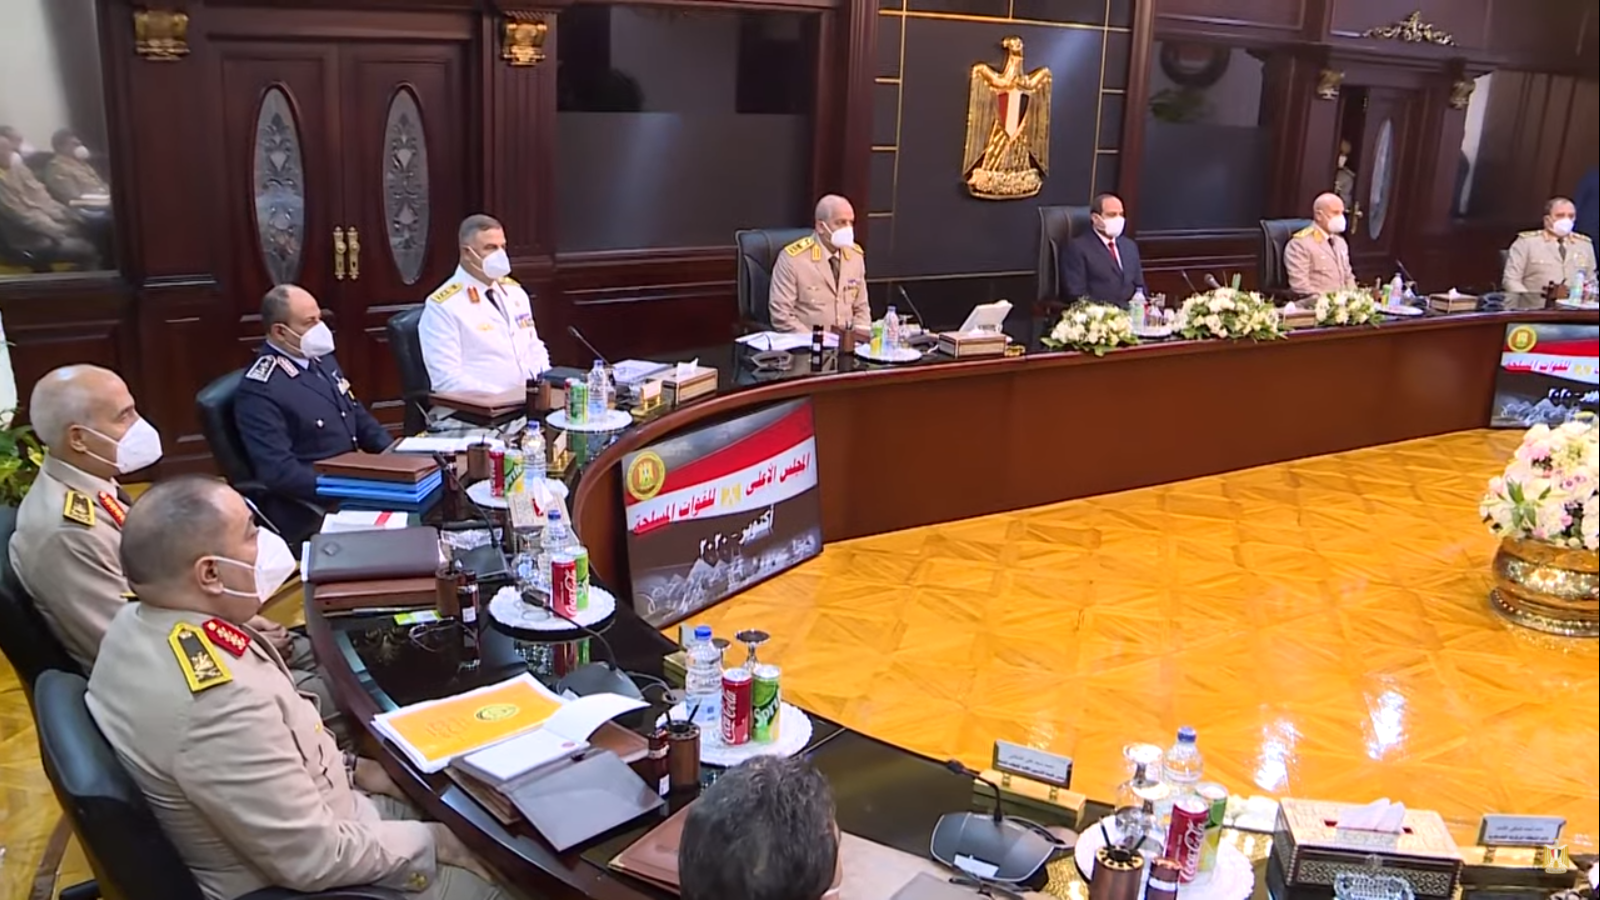 السيسى يترأس اجتماع المجلس الأعلى للقوات المسلحة لمناقشة مكافحة الإرهاب (1)